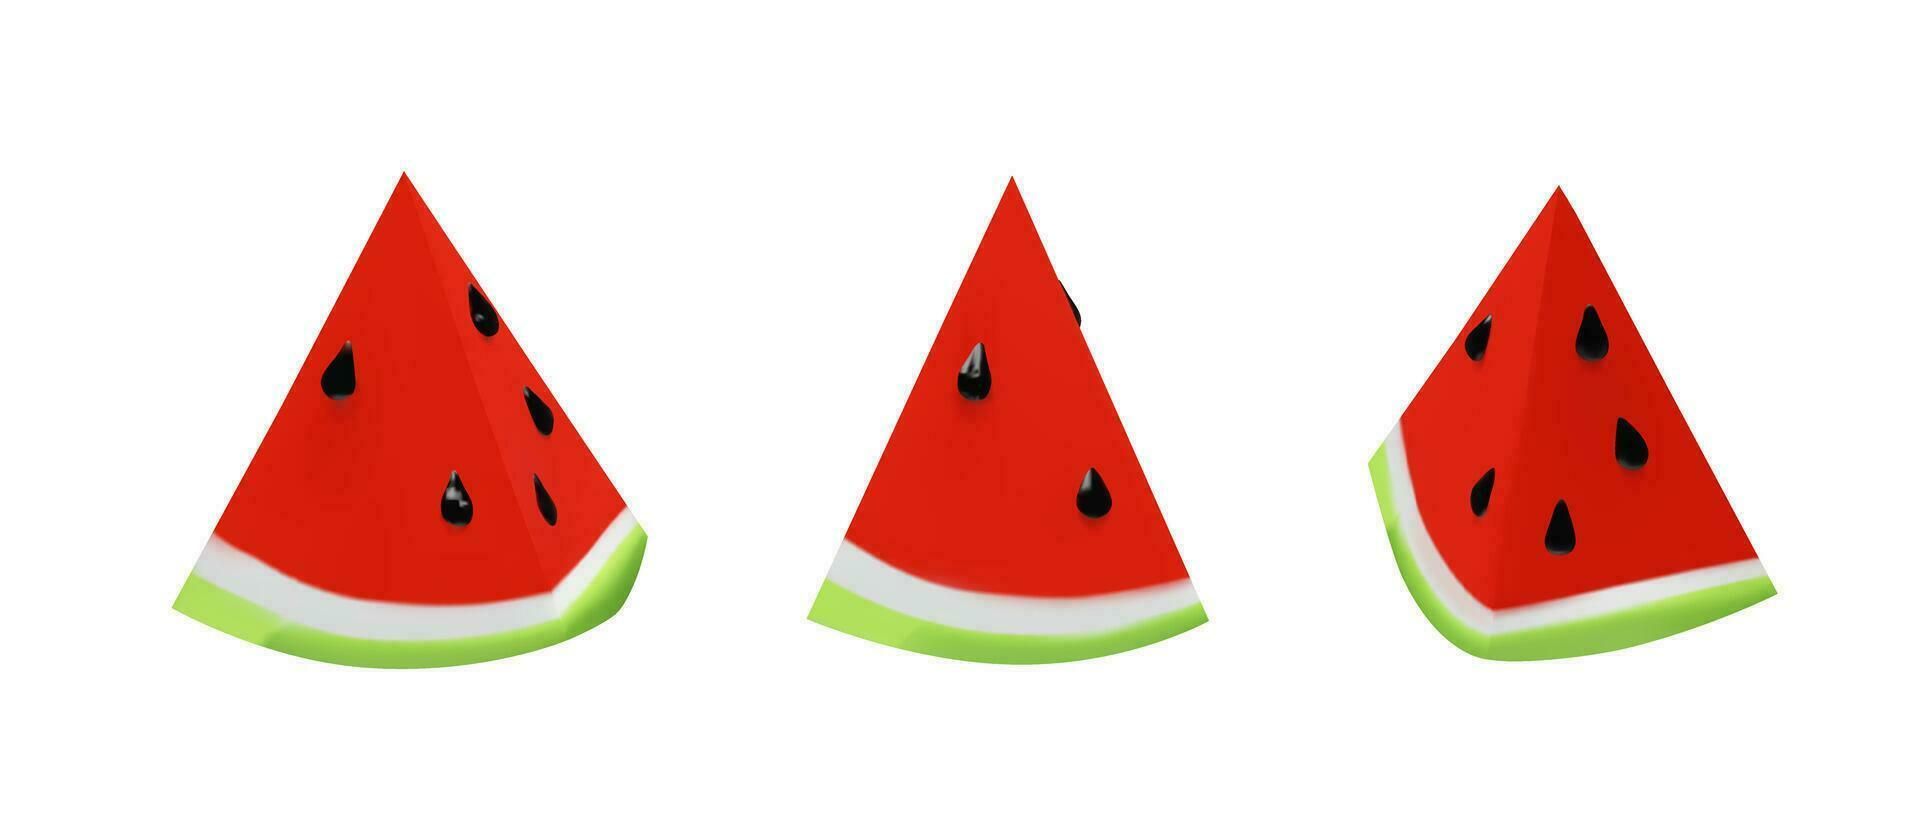 reeks 3d geven van klein plak watermeloen. realistisch gezond BES. vector illustratie in klei stijl. vers zomer oogst voor vegetarisch. sappig vers tussendoortje boer voedsel. smakelijk natuurlijk voeding een deel.